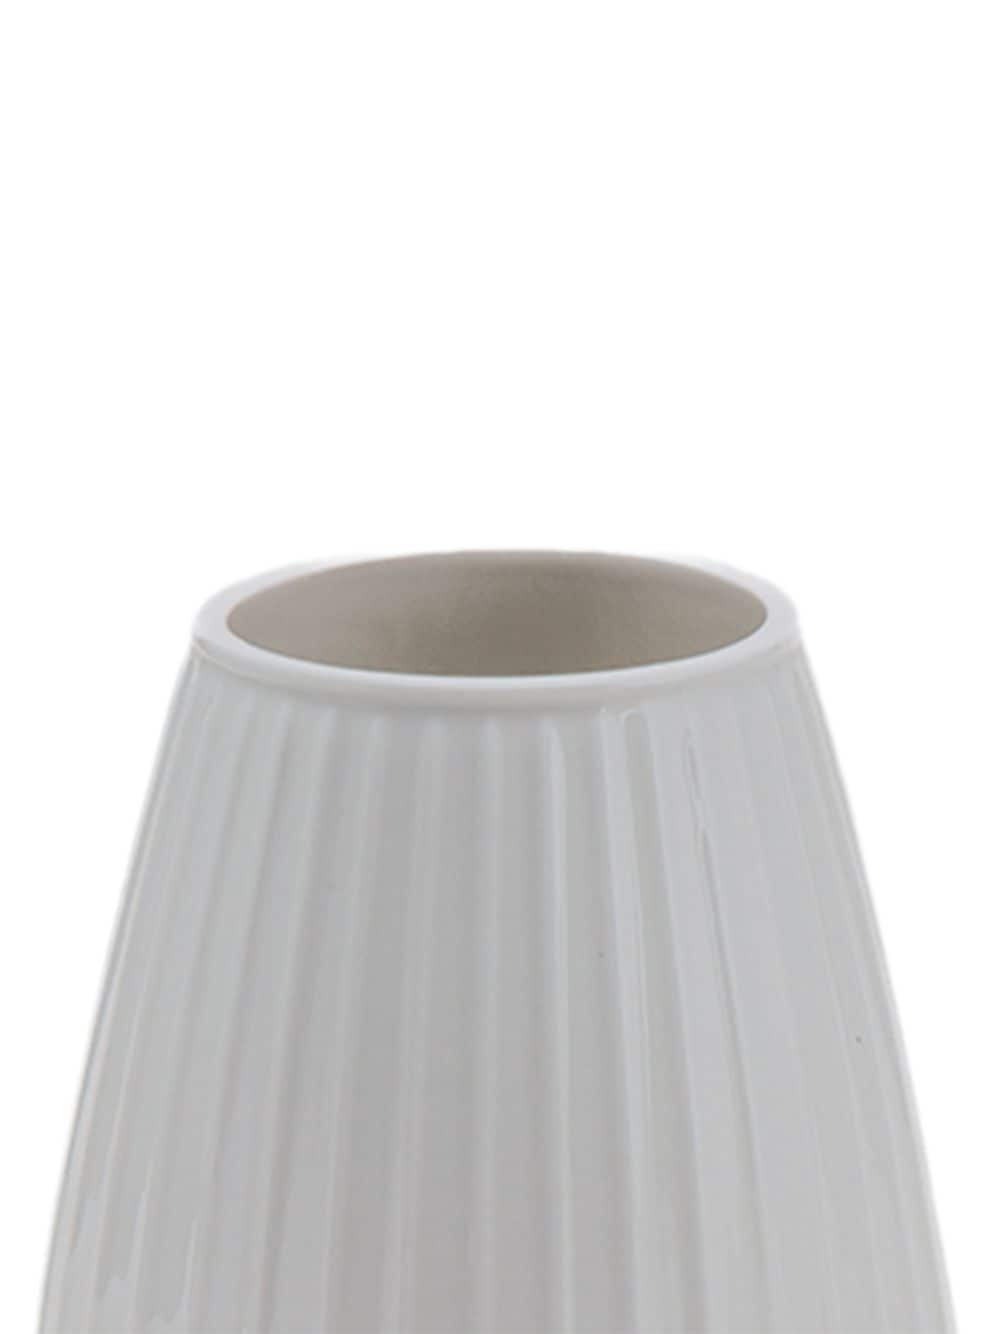 XLBoom medium Dim ceramic vase (23cm x 17.5cm) - Wit